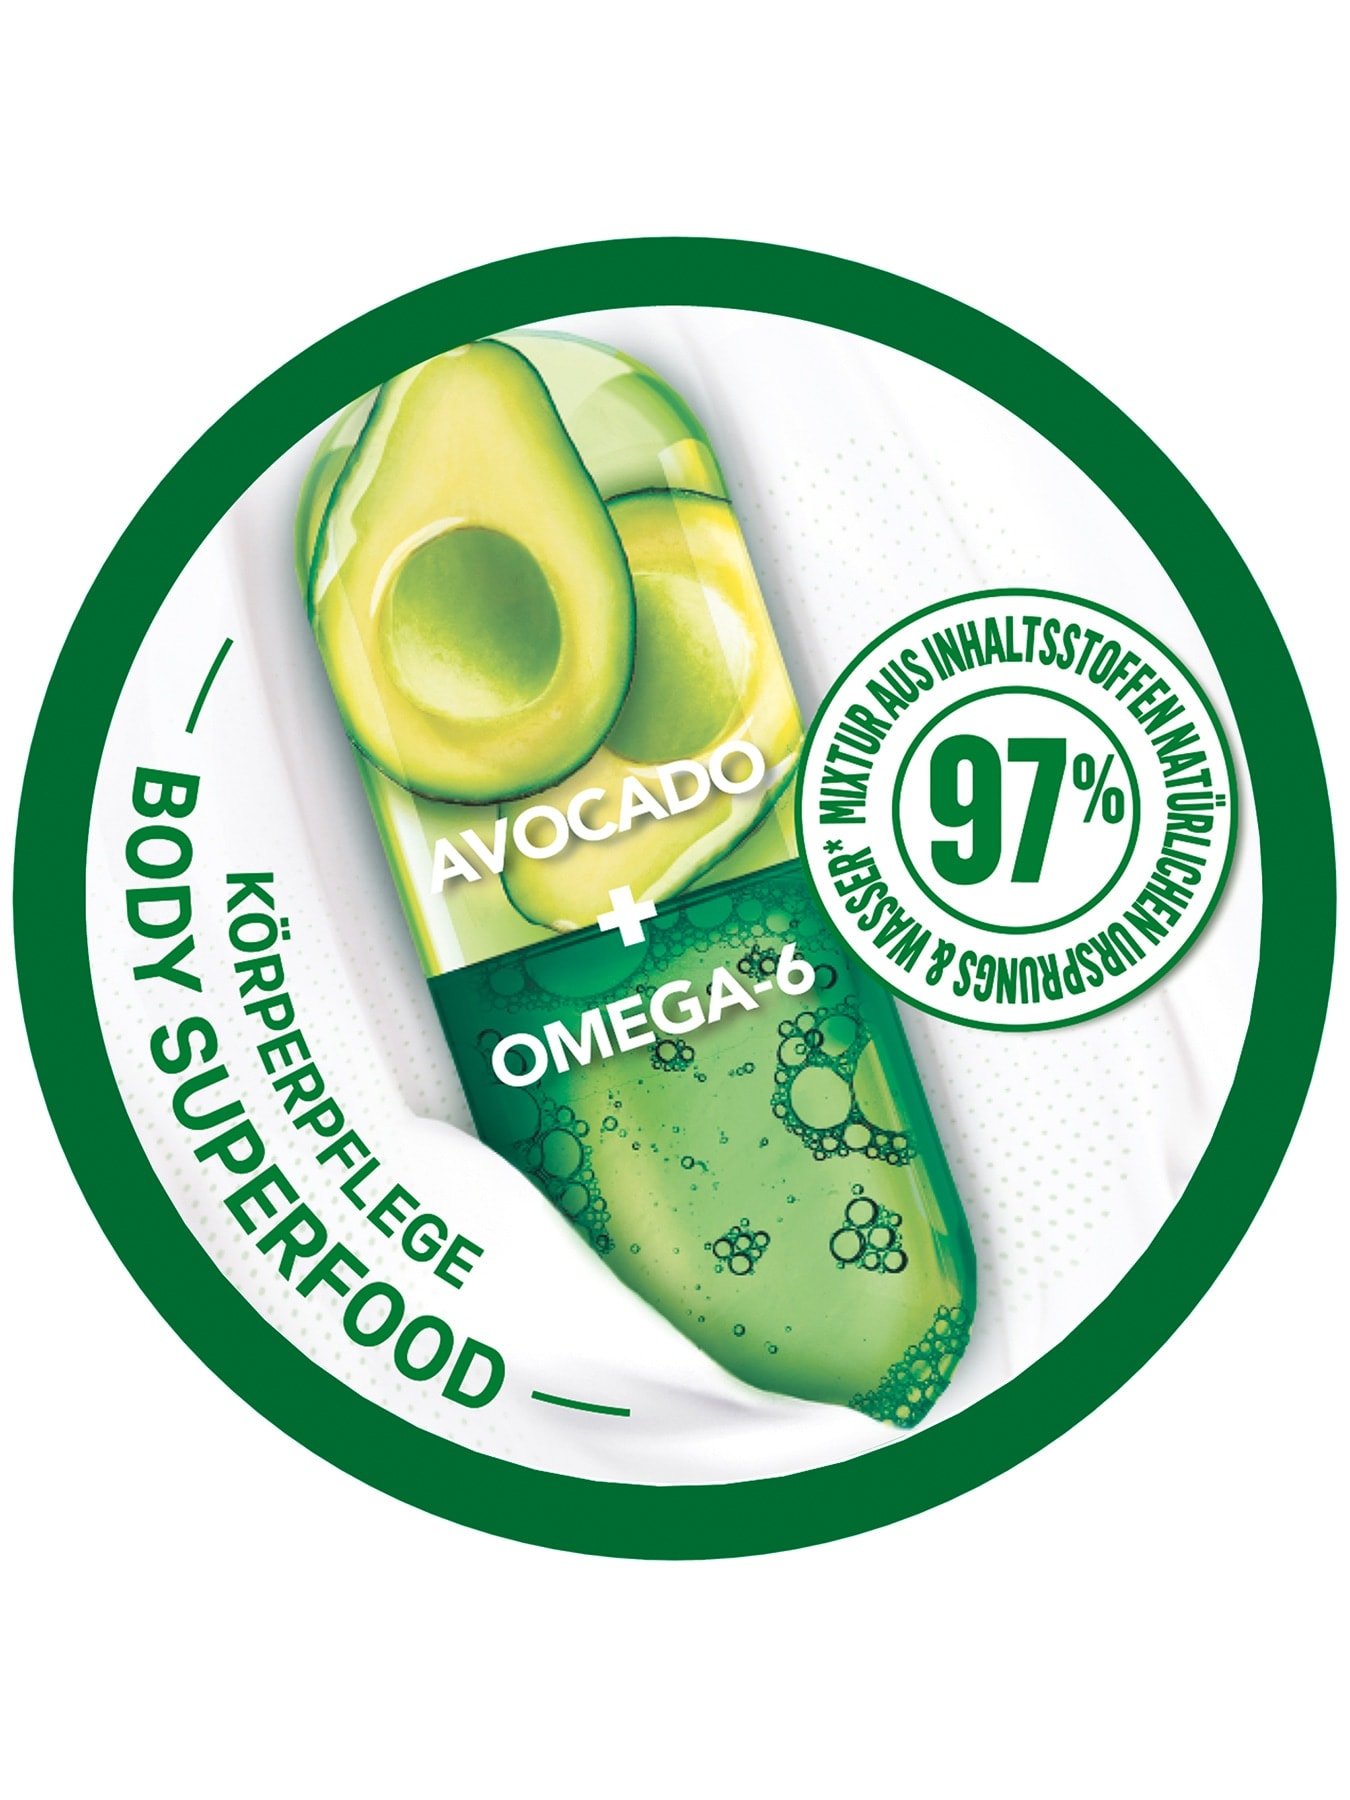 Body Superfood Körperpflege nährende Creme mit Avocado - Produktansicht von oben